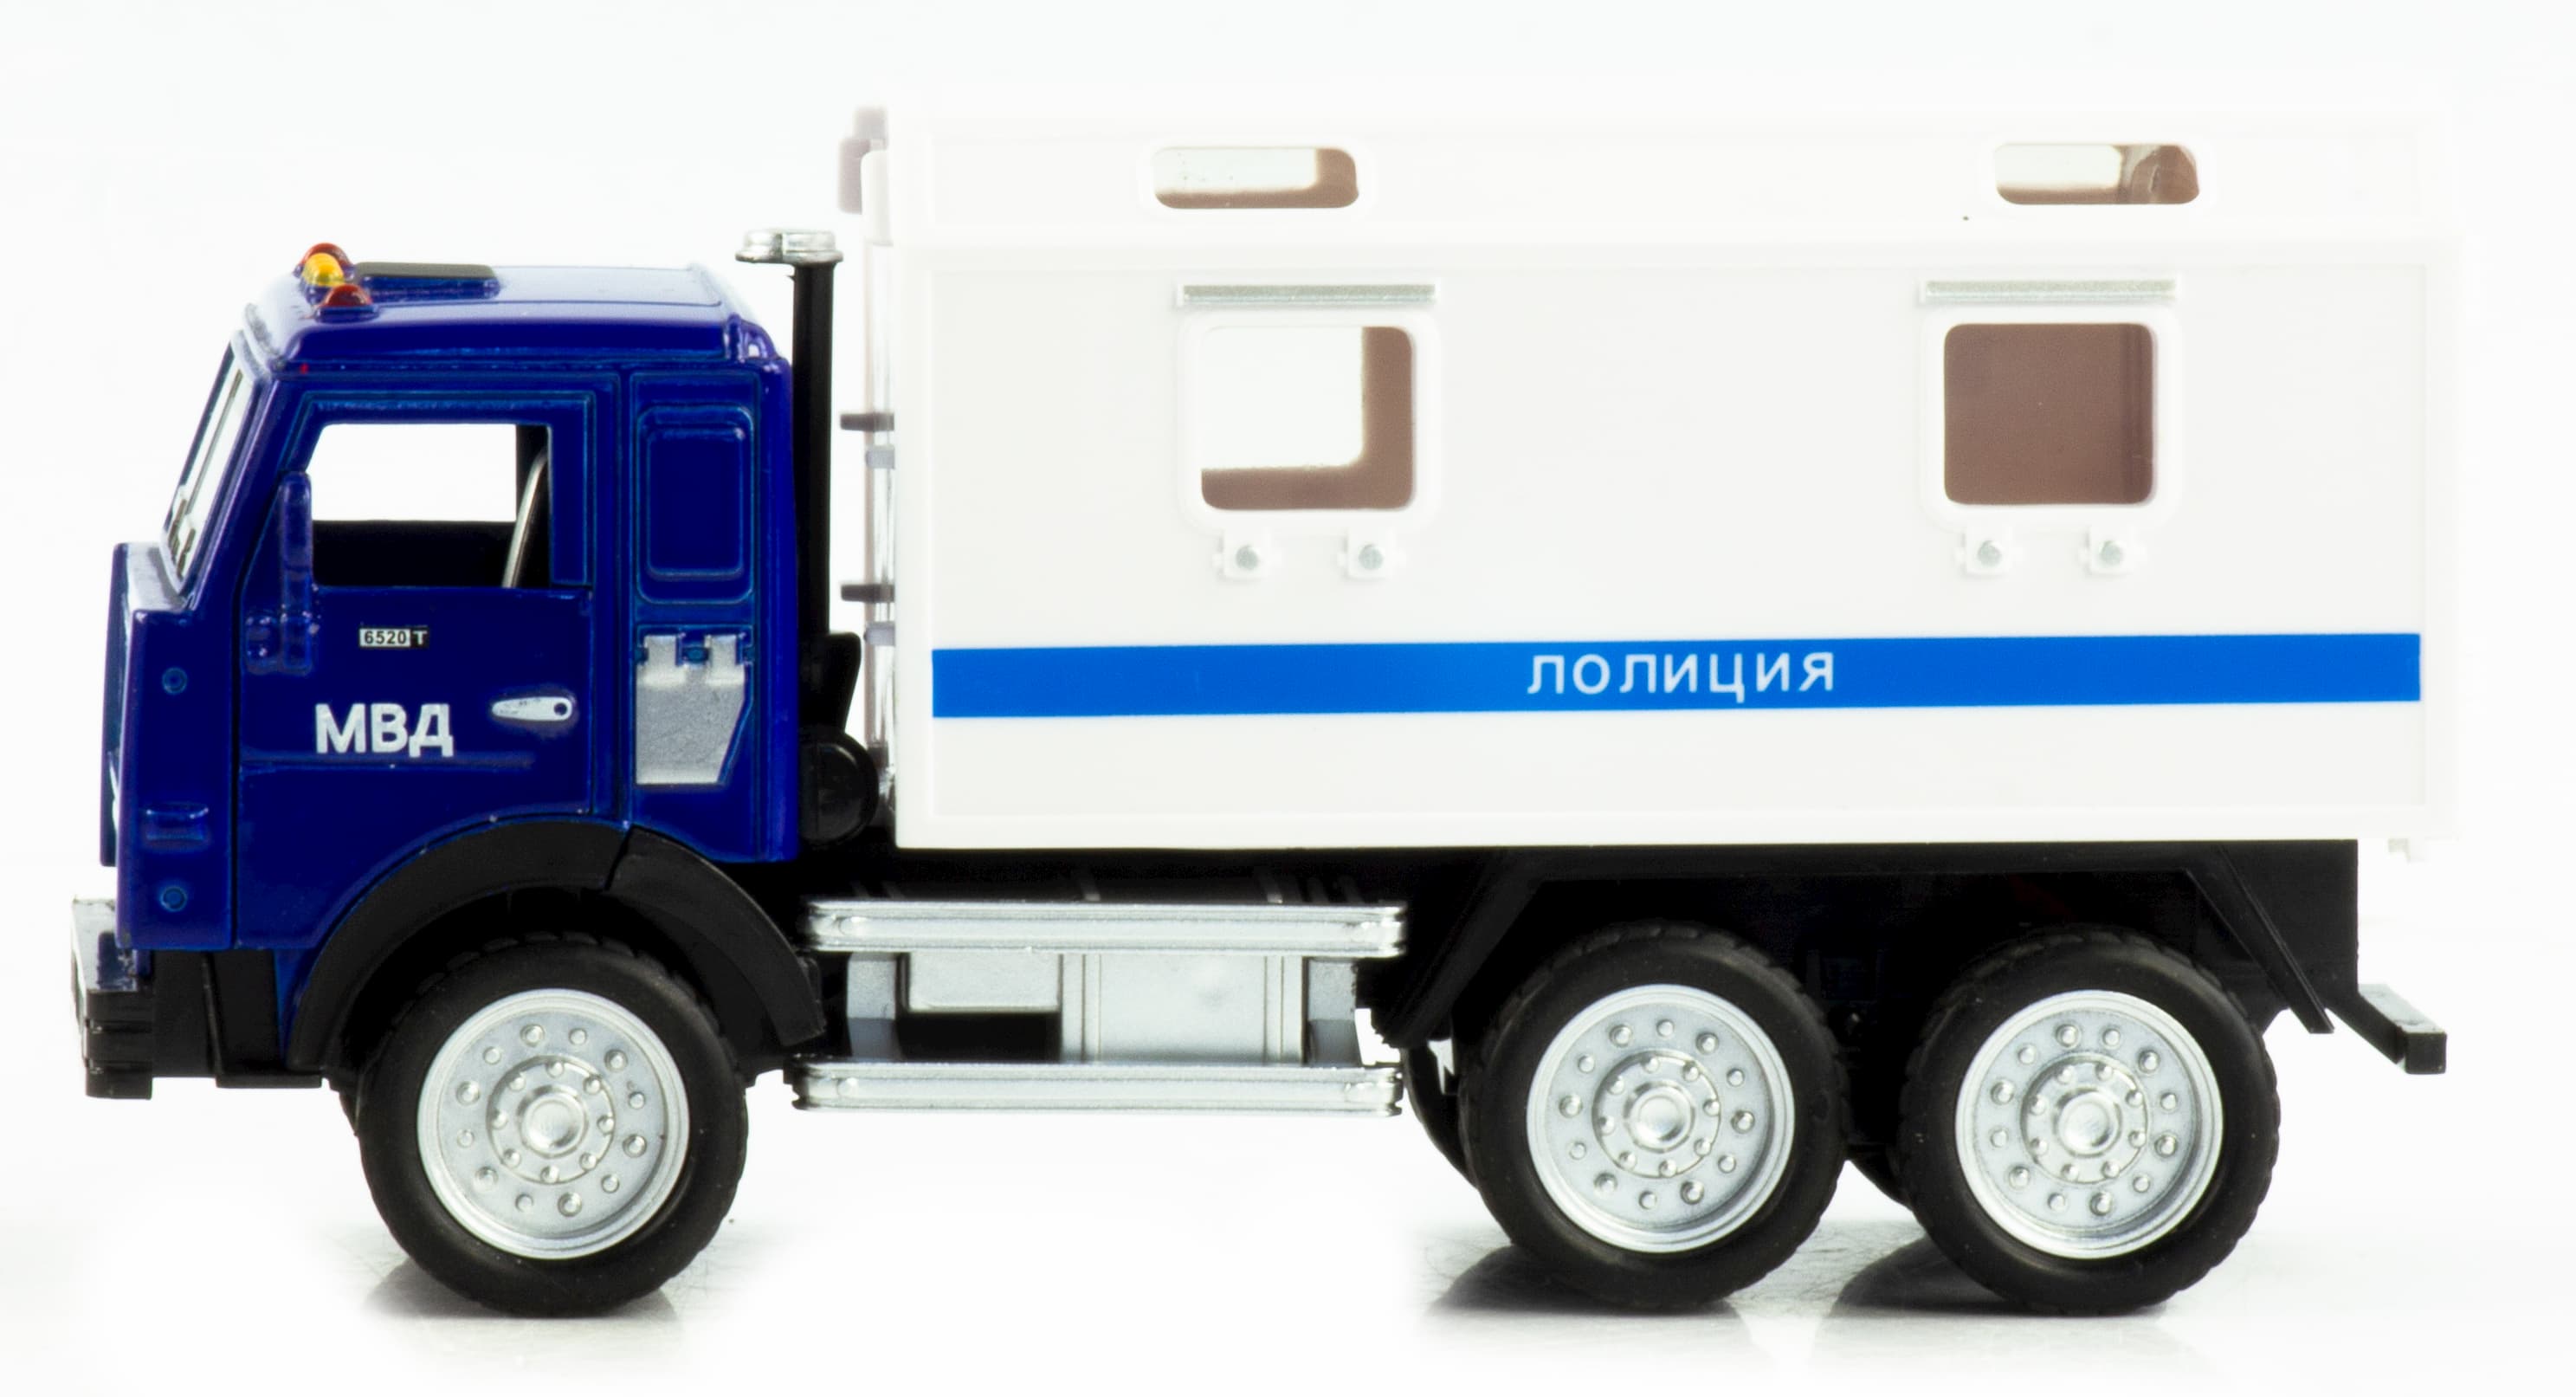 Машинка металлическая Wanbao «Камаз: Служебный фургон» 16,5 см., 670BD, инерционная, свет, звук / Полиция